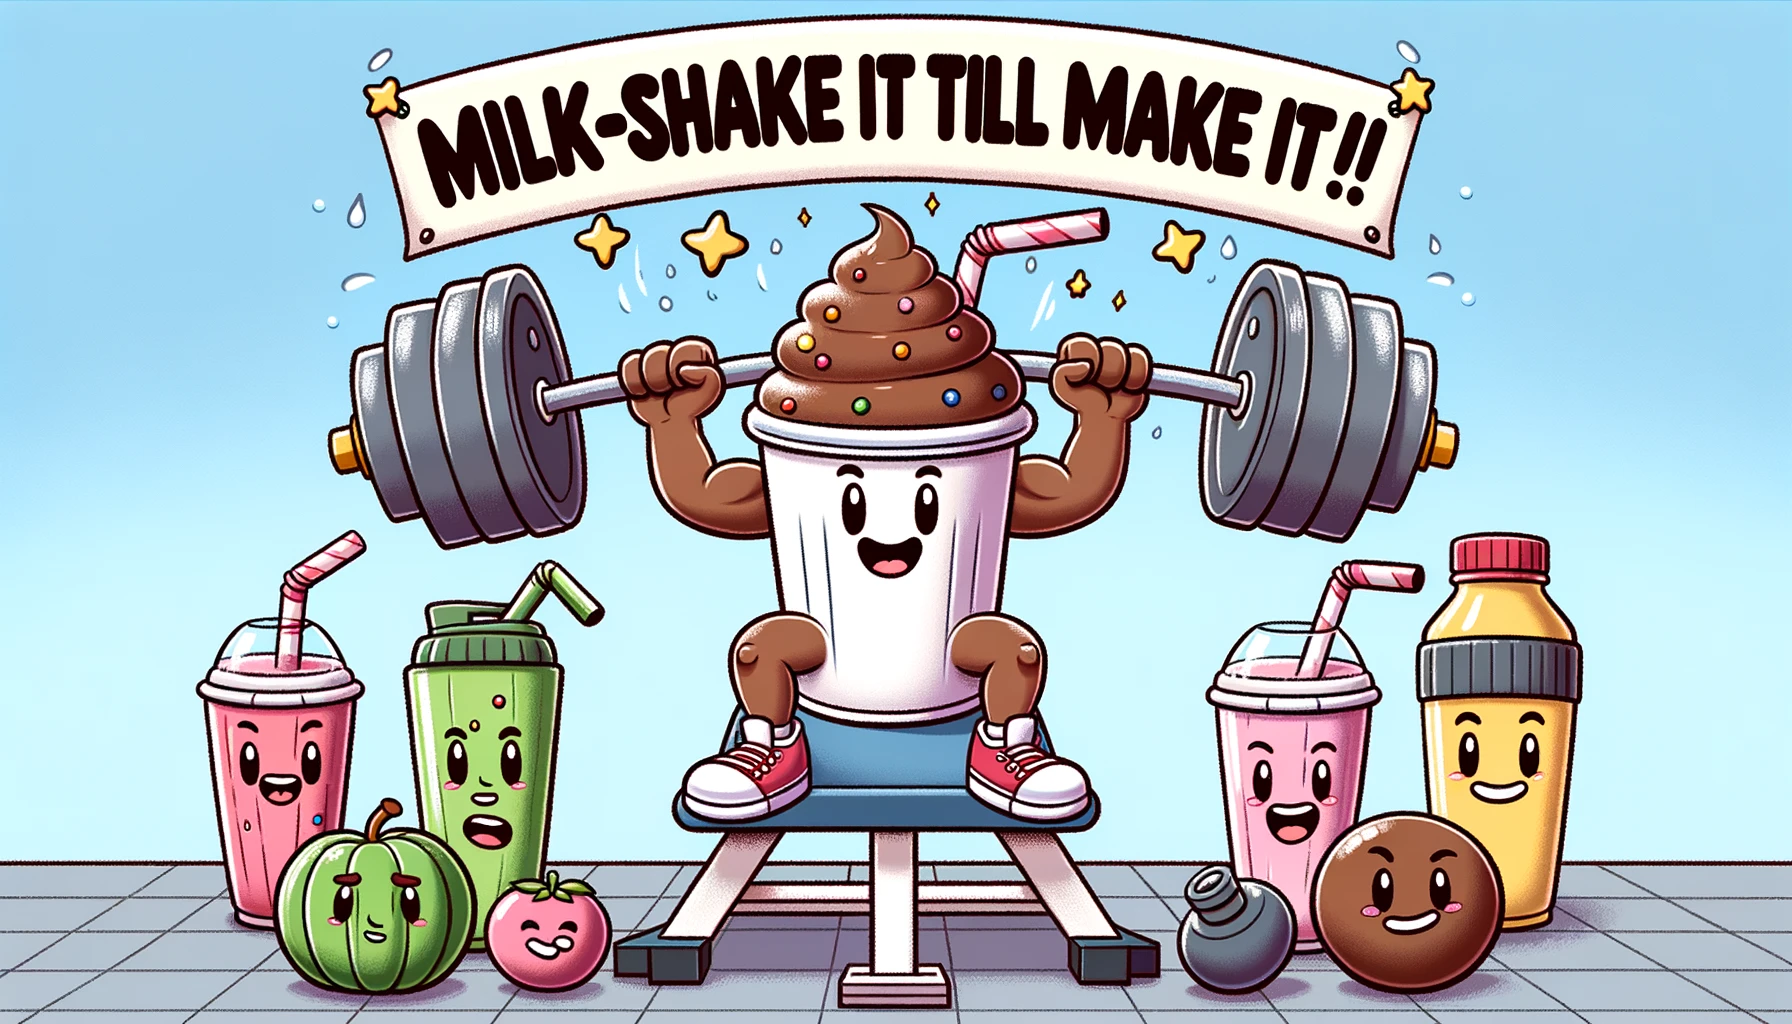 Milkshake it till you make it - Milkshake Pun